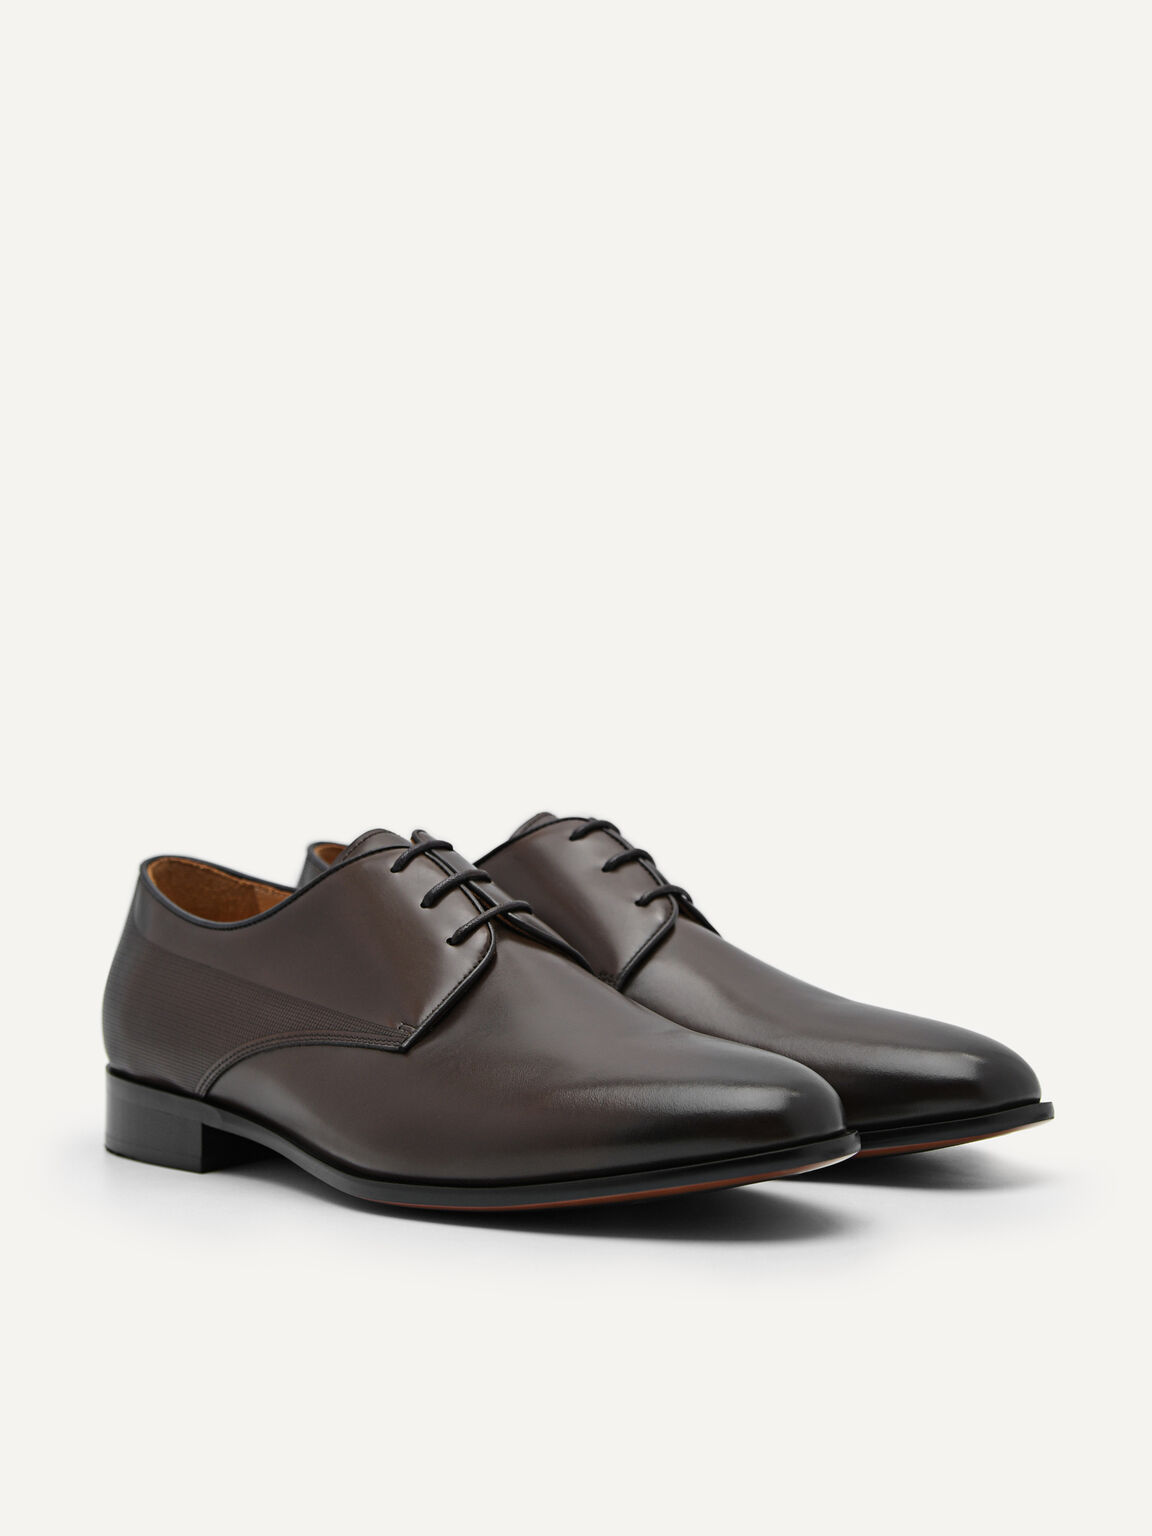 Harisson Leather Derby Shoes, Dark Brown